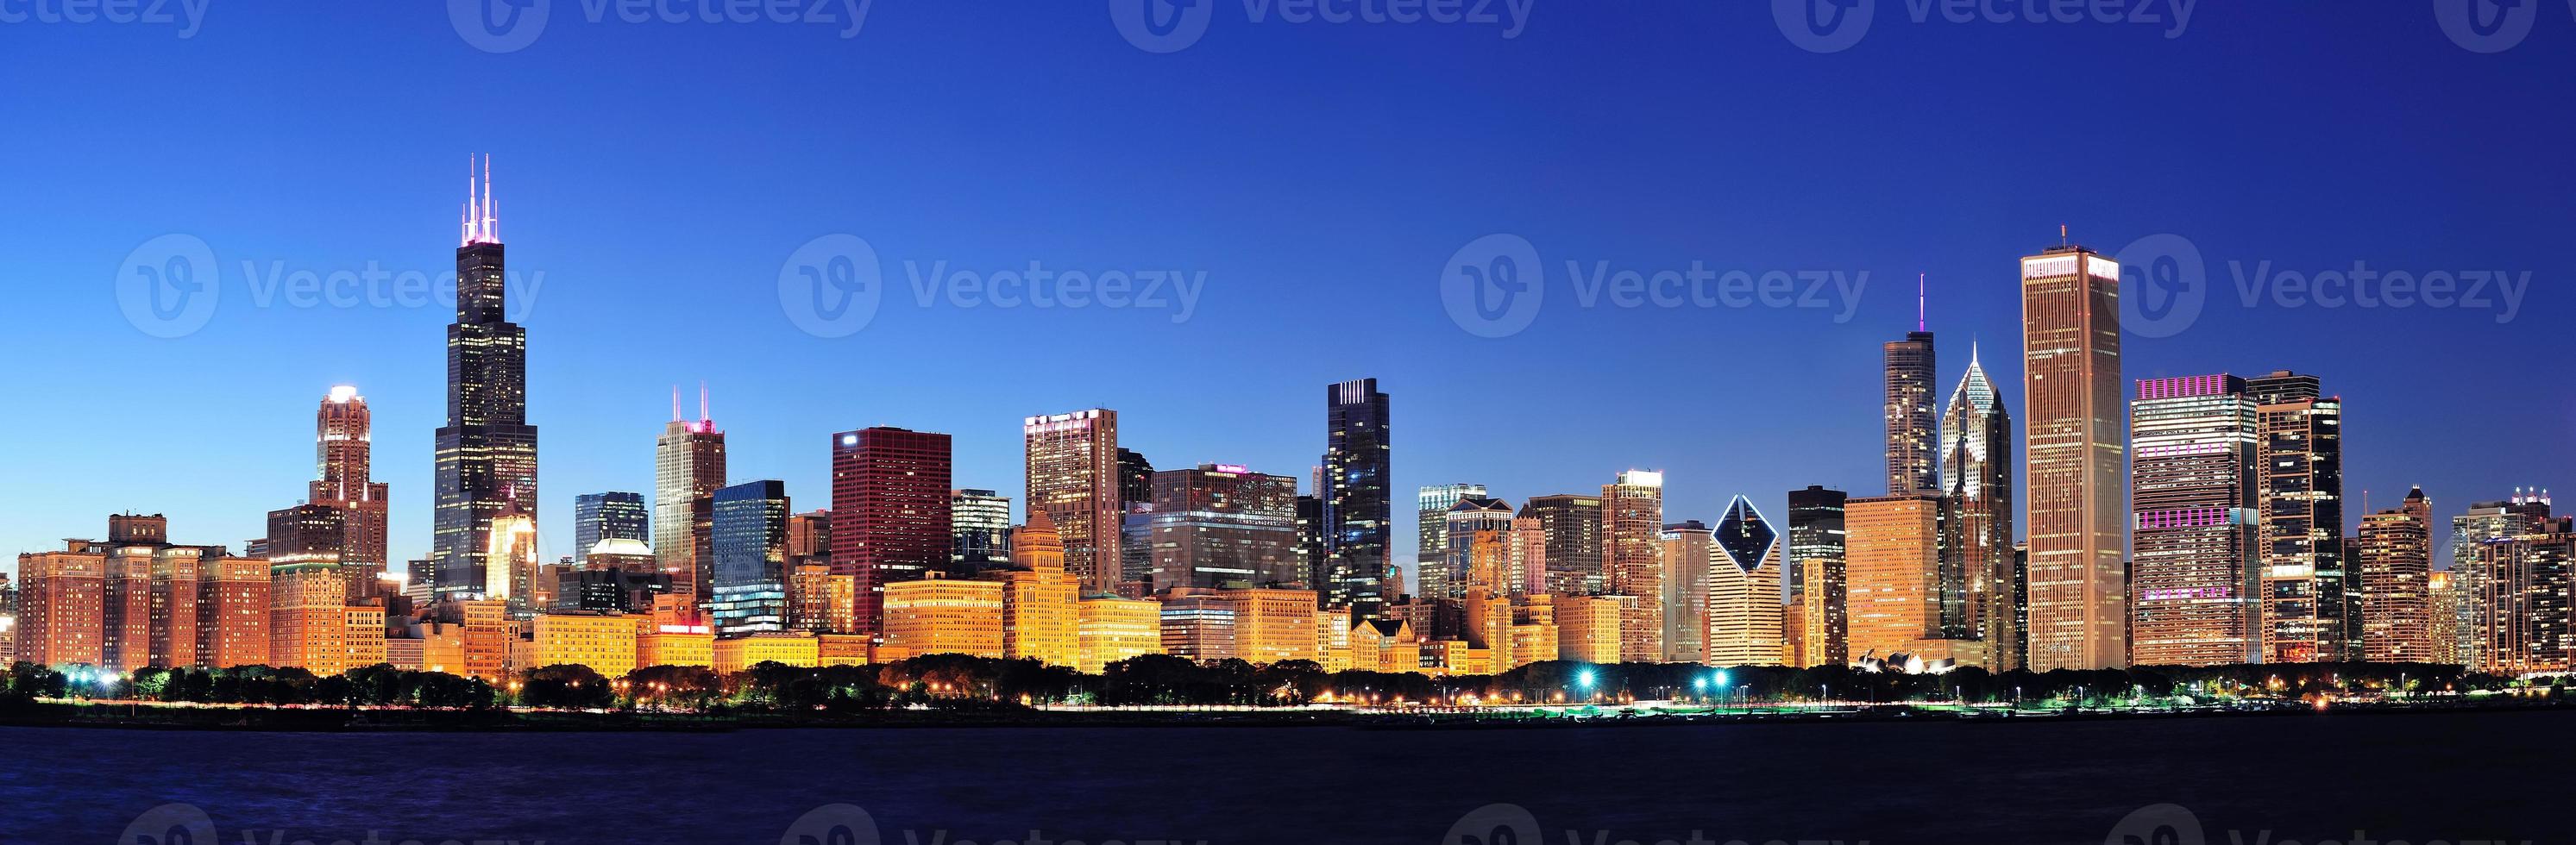 Chicago night panorama photo